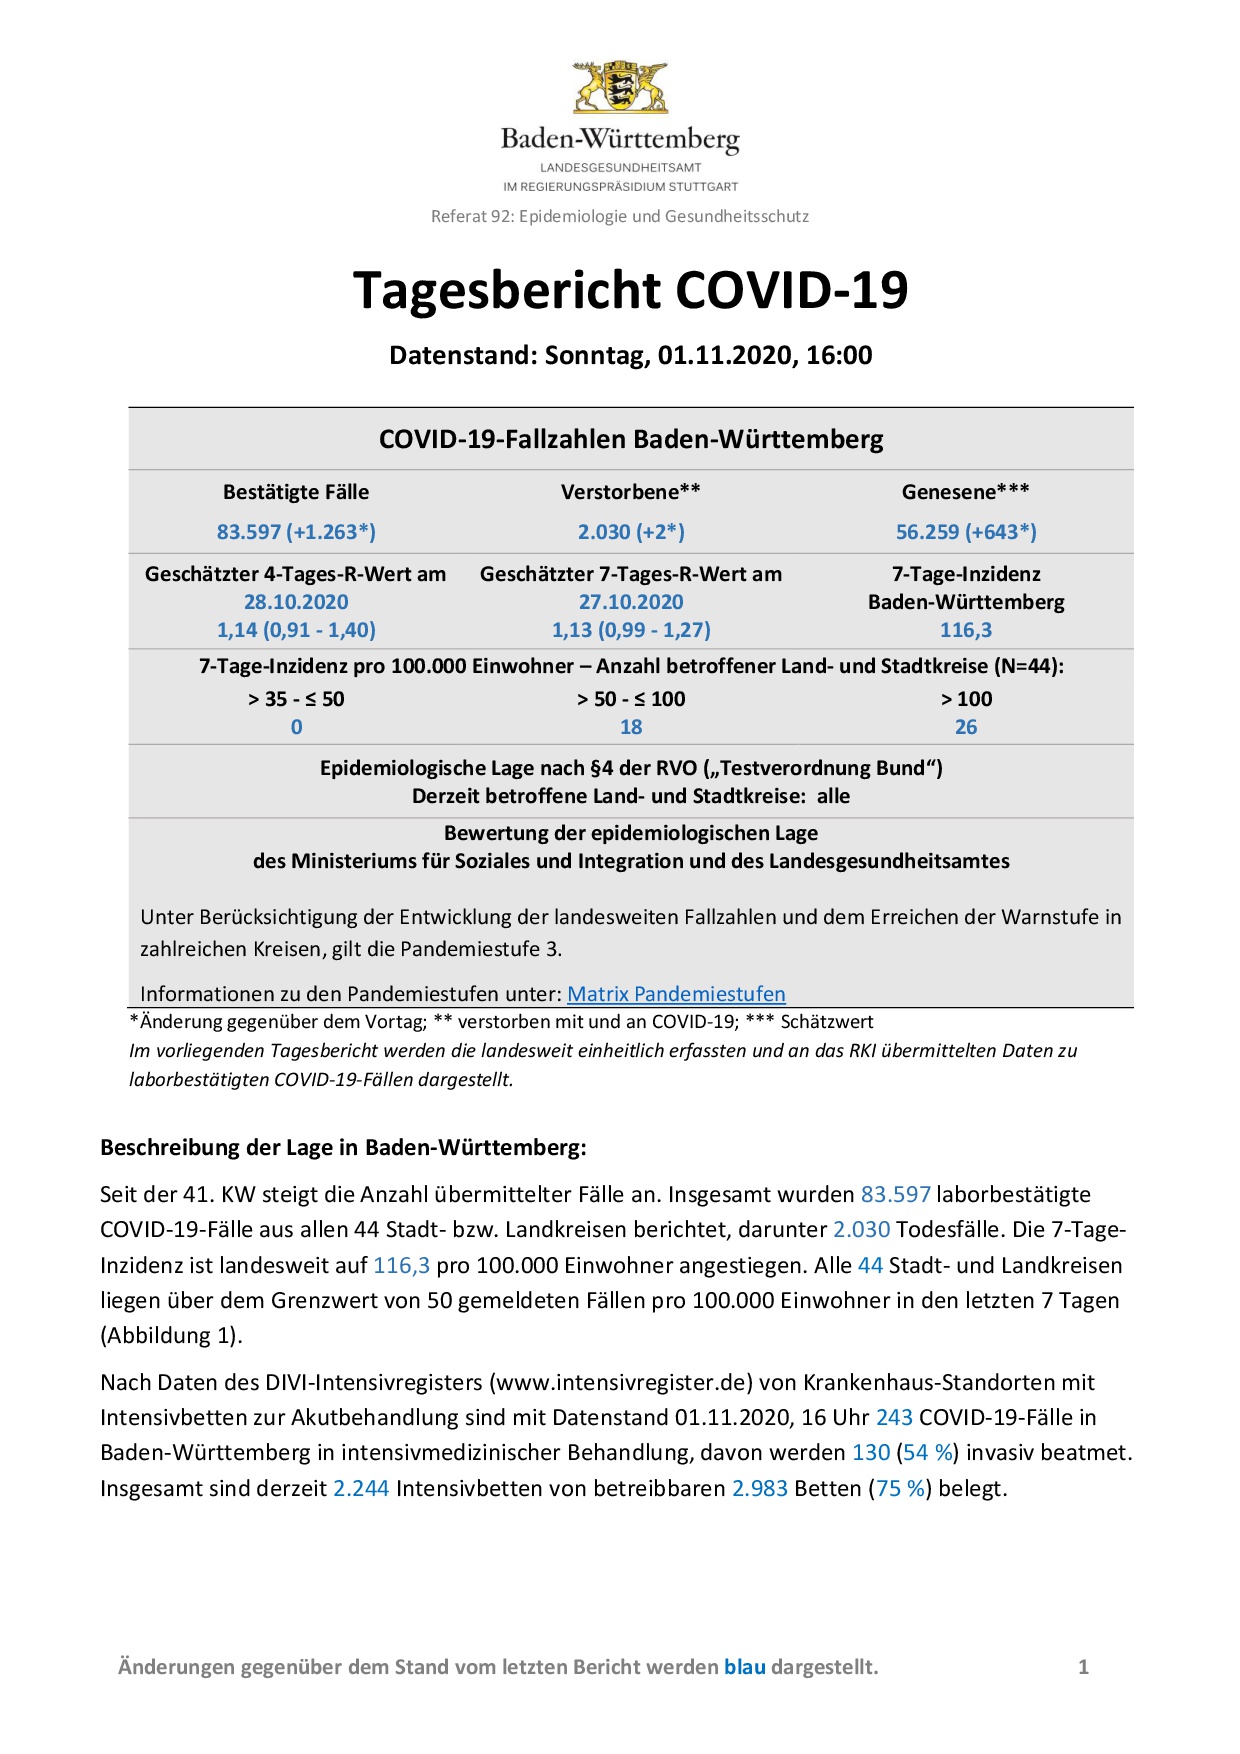 COVID-19 Tagesbericht (01.11.2020) des Landesgesundheitsamts Baden-Württemberg – (ausführlicher)